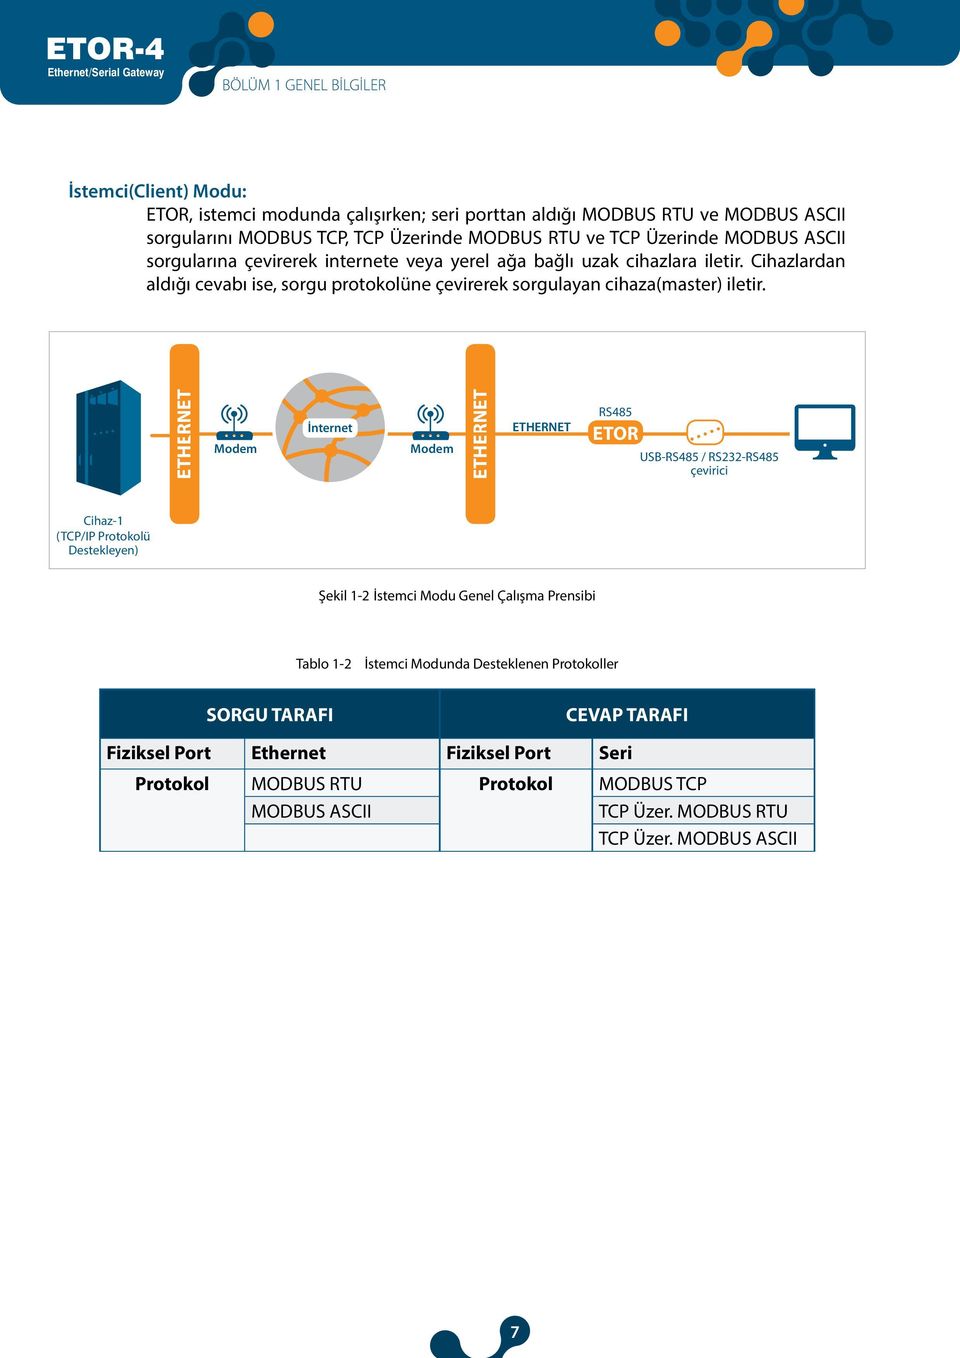 ETHERNET Modem İnternet Modem ETHERNET ETHERNET RS485 ETOR USB-RS485 / RS232-RS485 çevirici Cihaz-1 (TCP/IP Protokolü Destekleyen) Şekil 1-2 İstemci Modu Genel Çalışma Prensibi Tablo 1-2